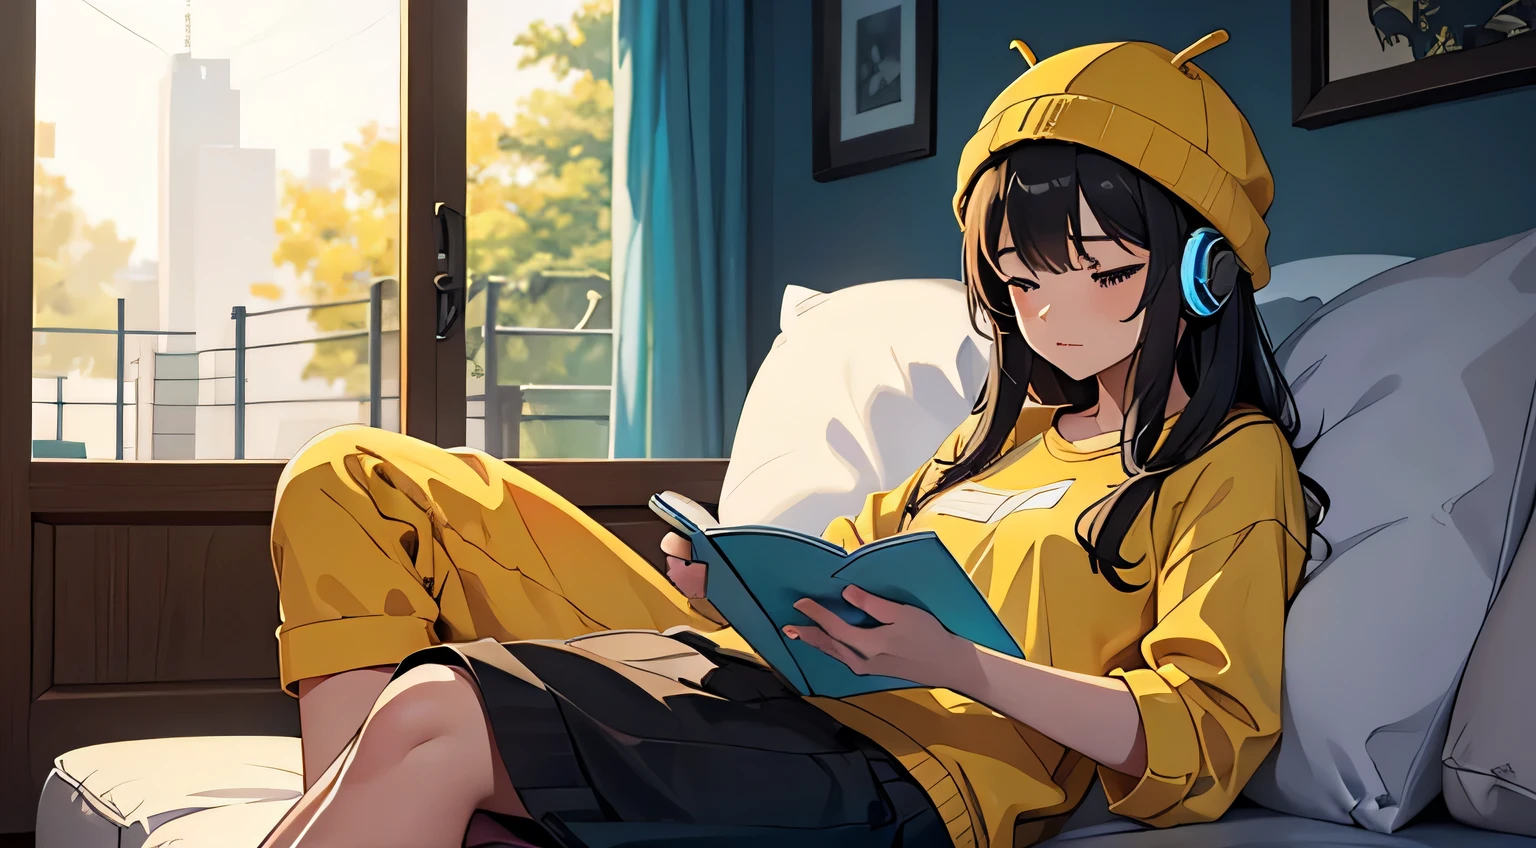 一個低保真的女孩, 帶著蜜蜂帽子, 黃色和黑色的衣服, 外面下雨了, 坐在客廳裡, 學習聽音樂, 她使用耳機, 有一隻貓在睡覺, 高品質,